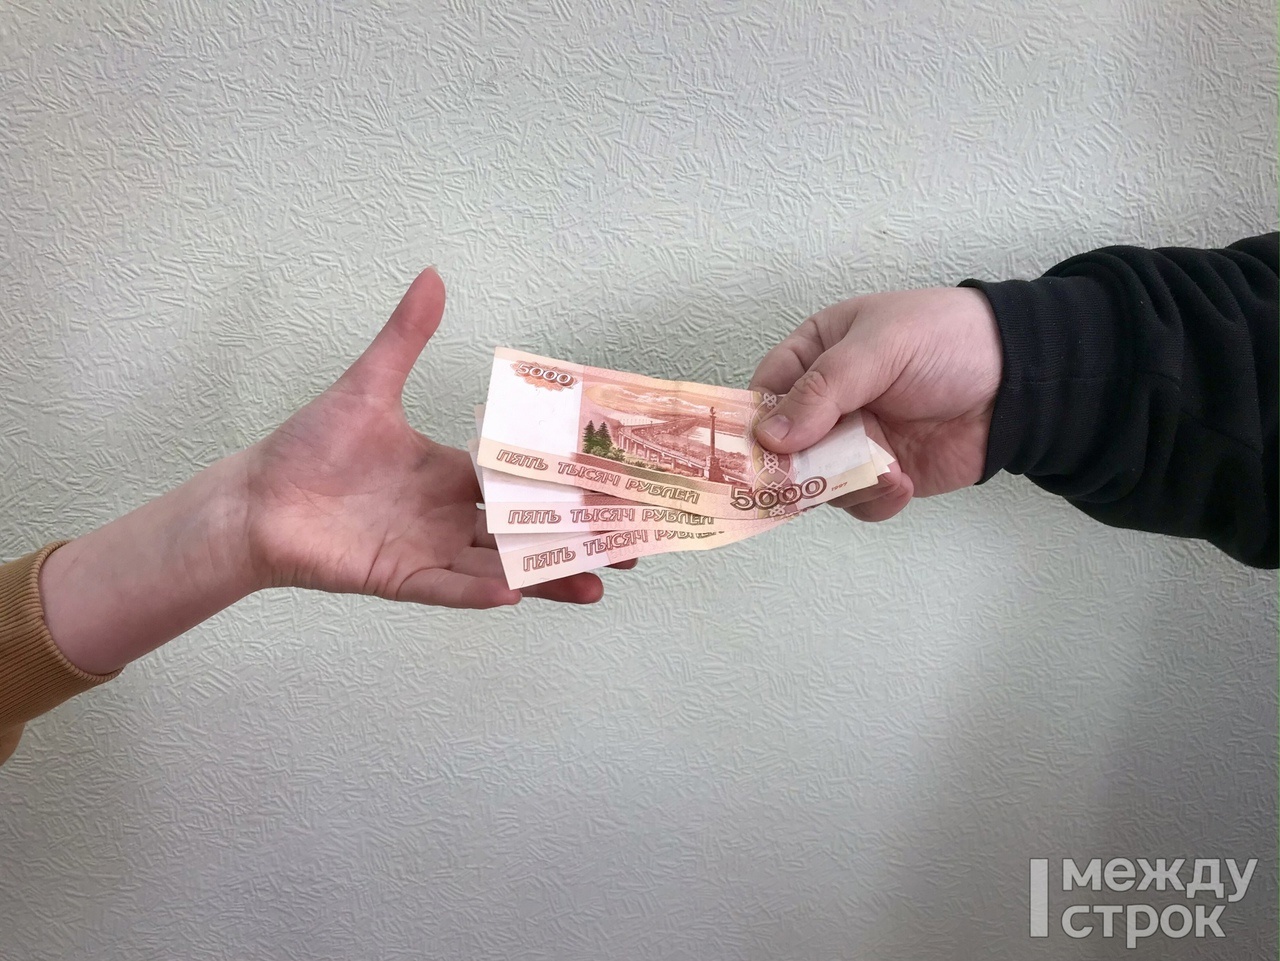 Тагильчанин взял кредит на 280 тысяч рублей и перевёл их мошенникам